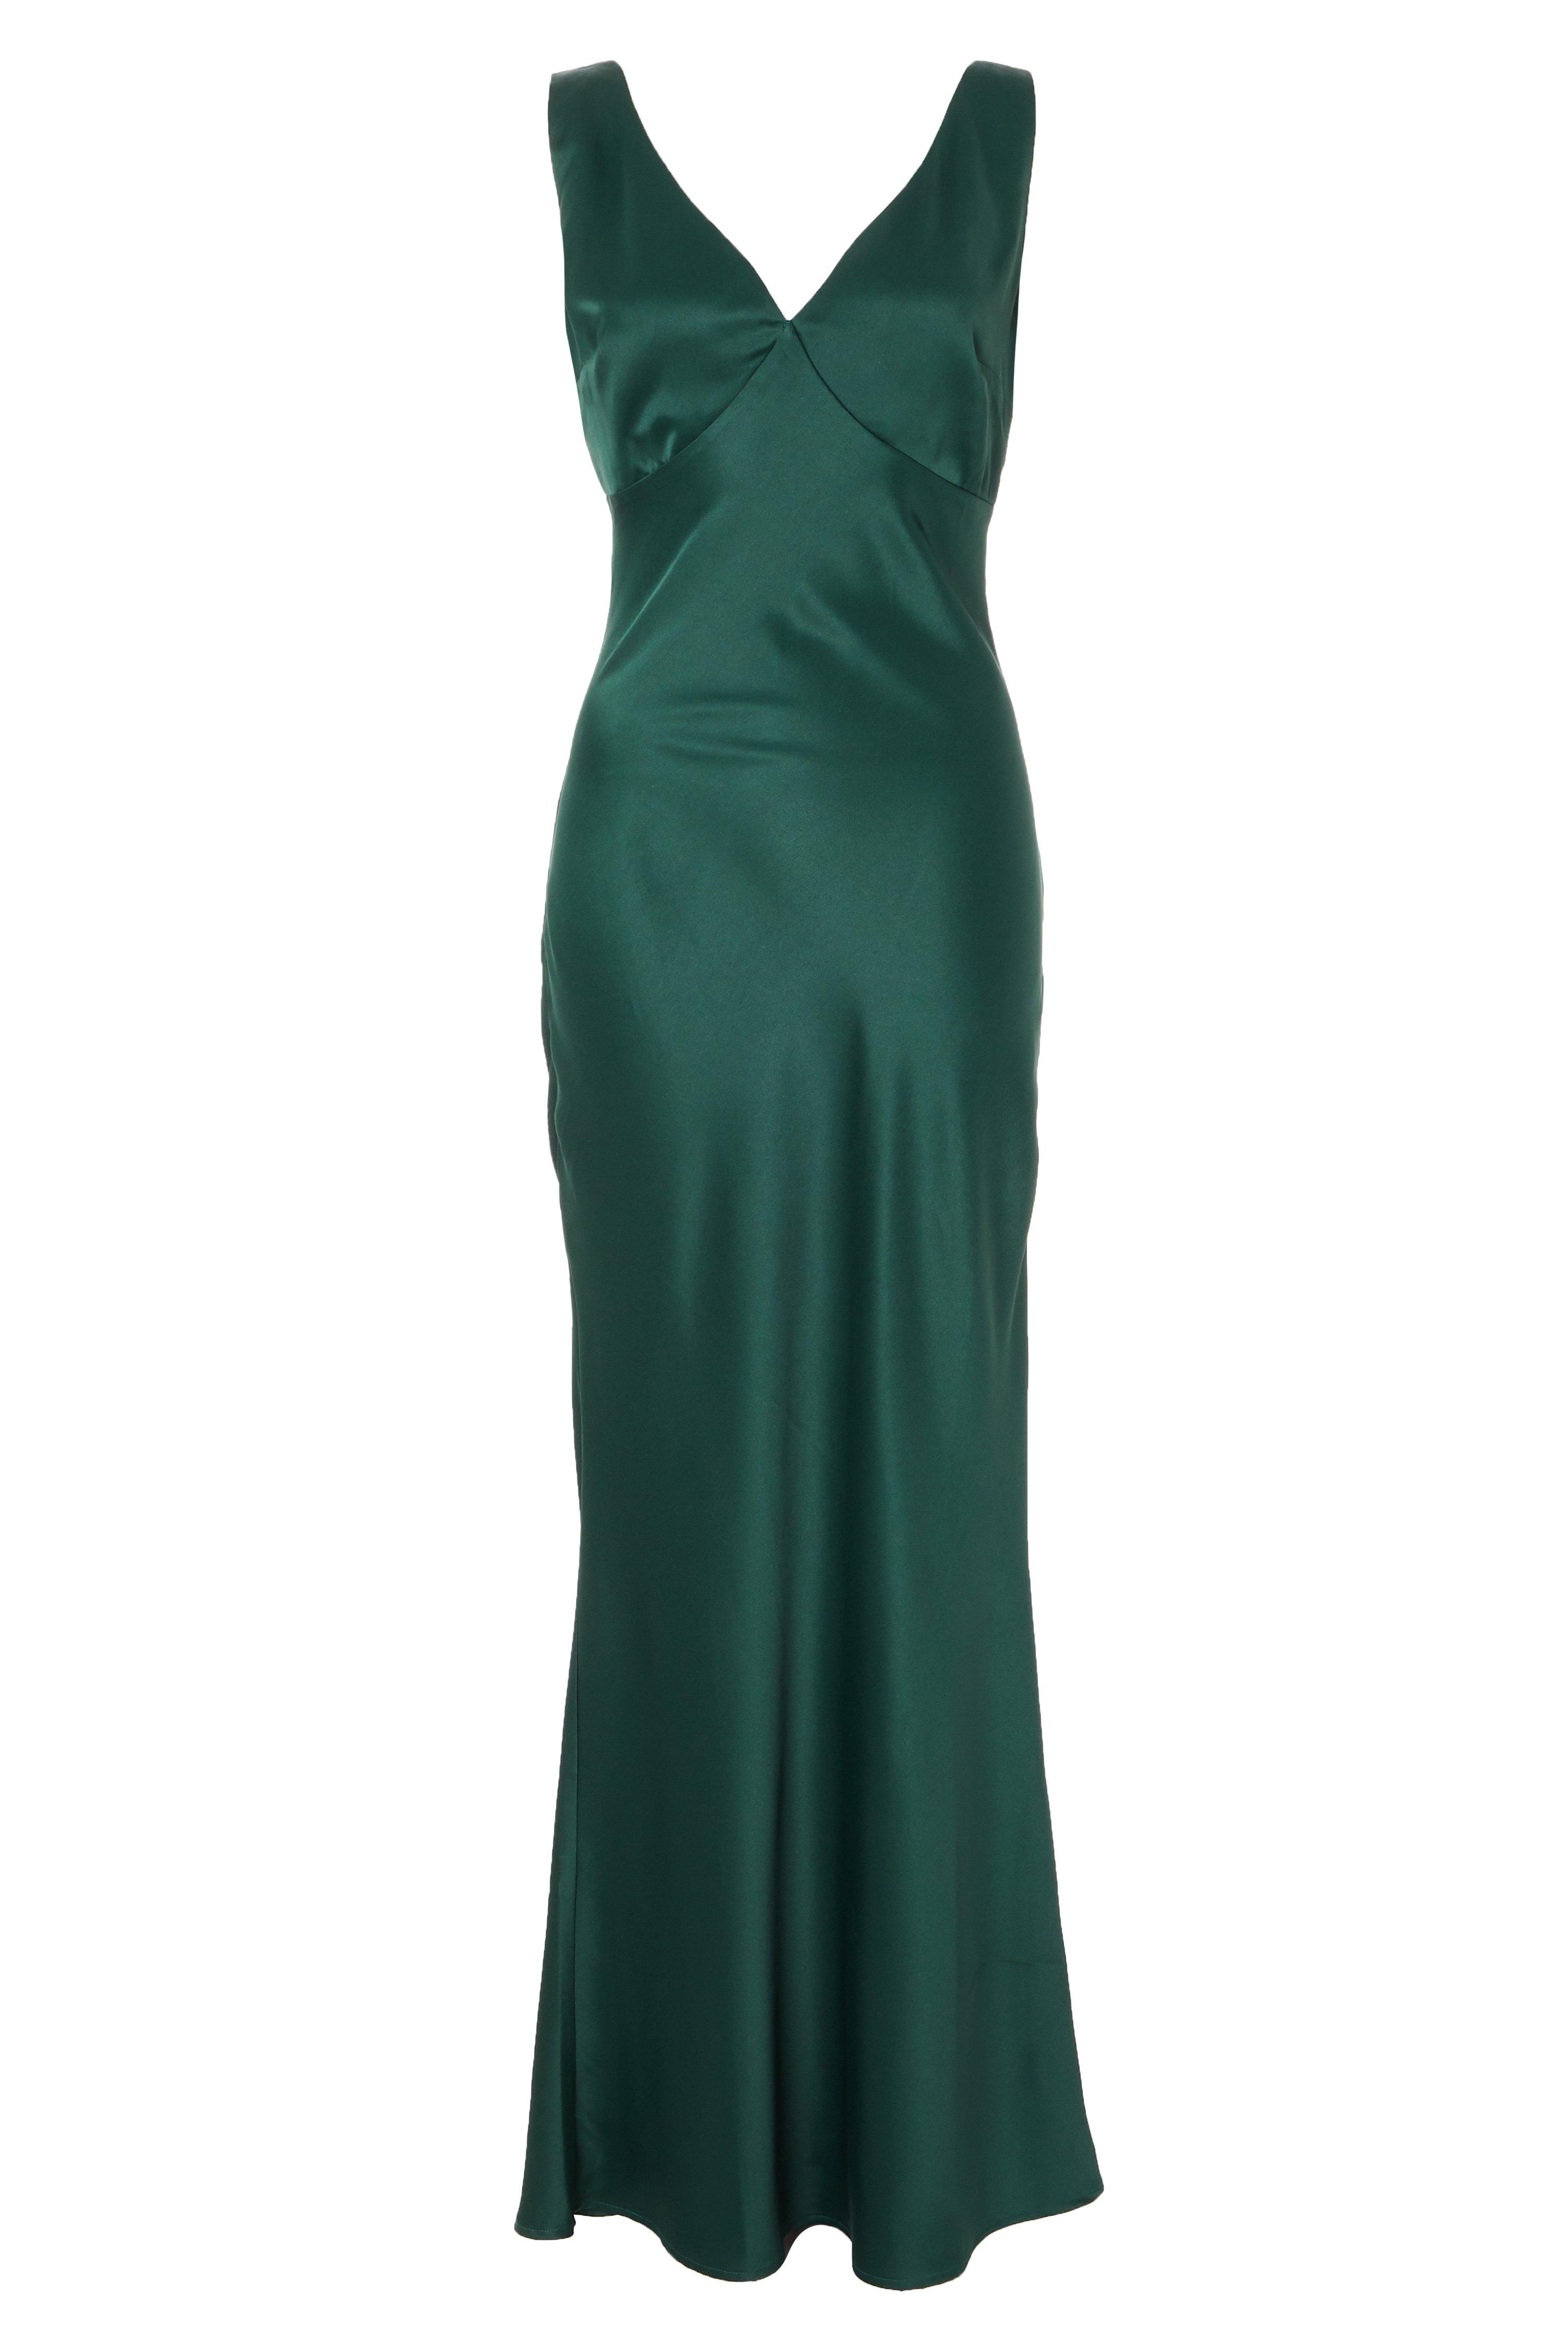 Green Satin Slip Maxi Dress - Quiz Clothing